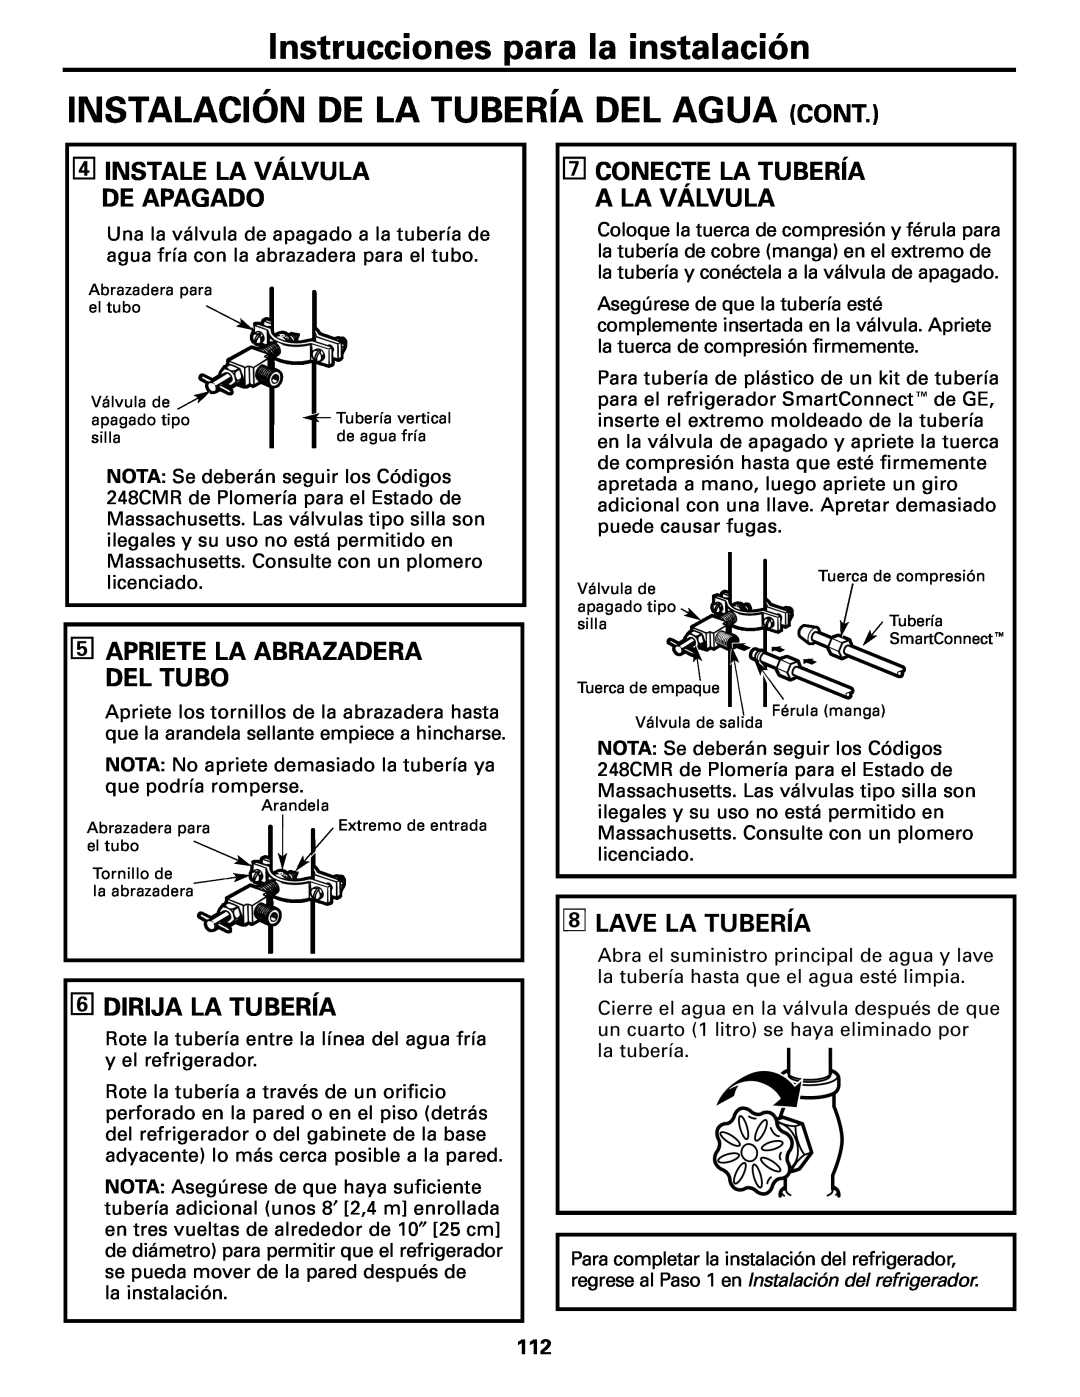 GE Monogram 22 Instalación De La Tubería Del Agua Cont, Apriete La Abrazadera Del Tubo, Dirija La Tubería, Lave La Tubería 